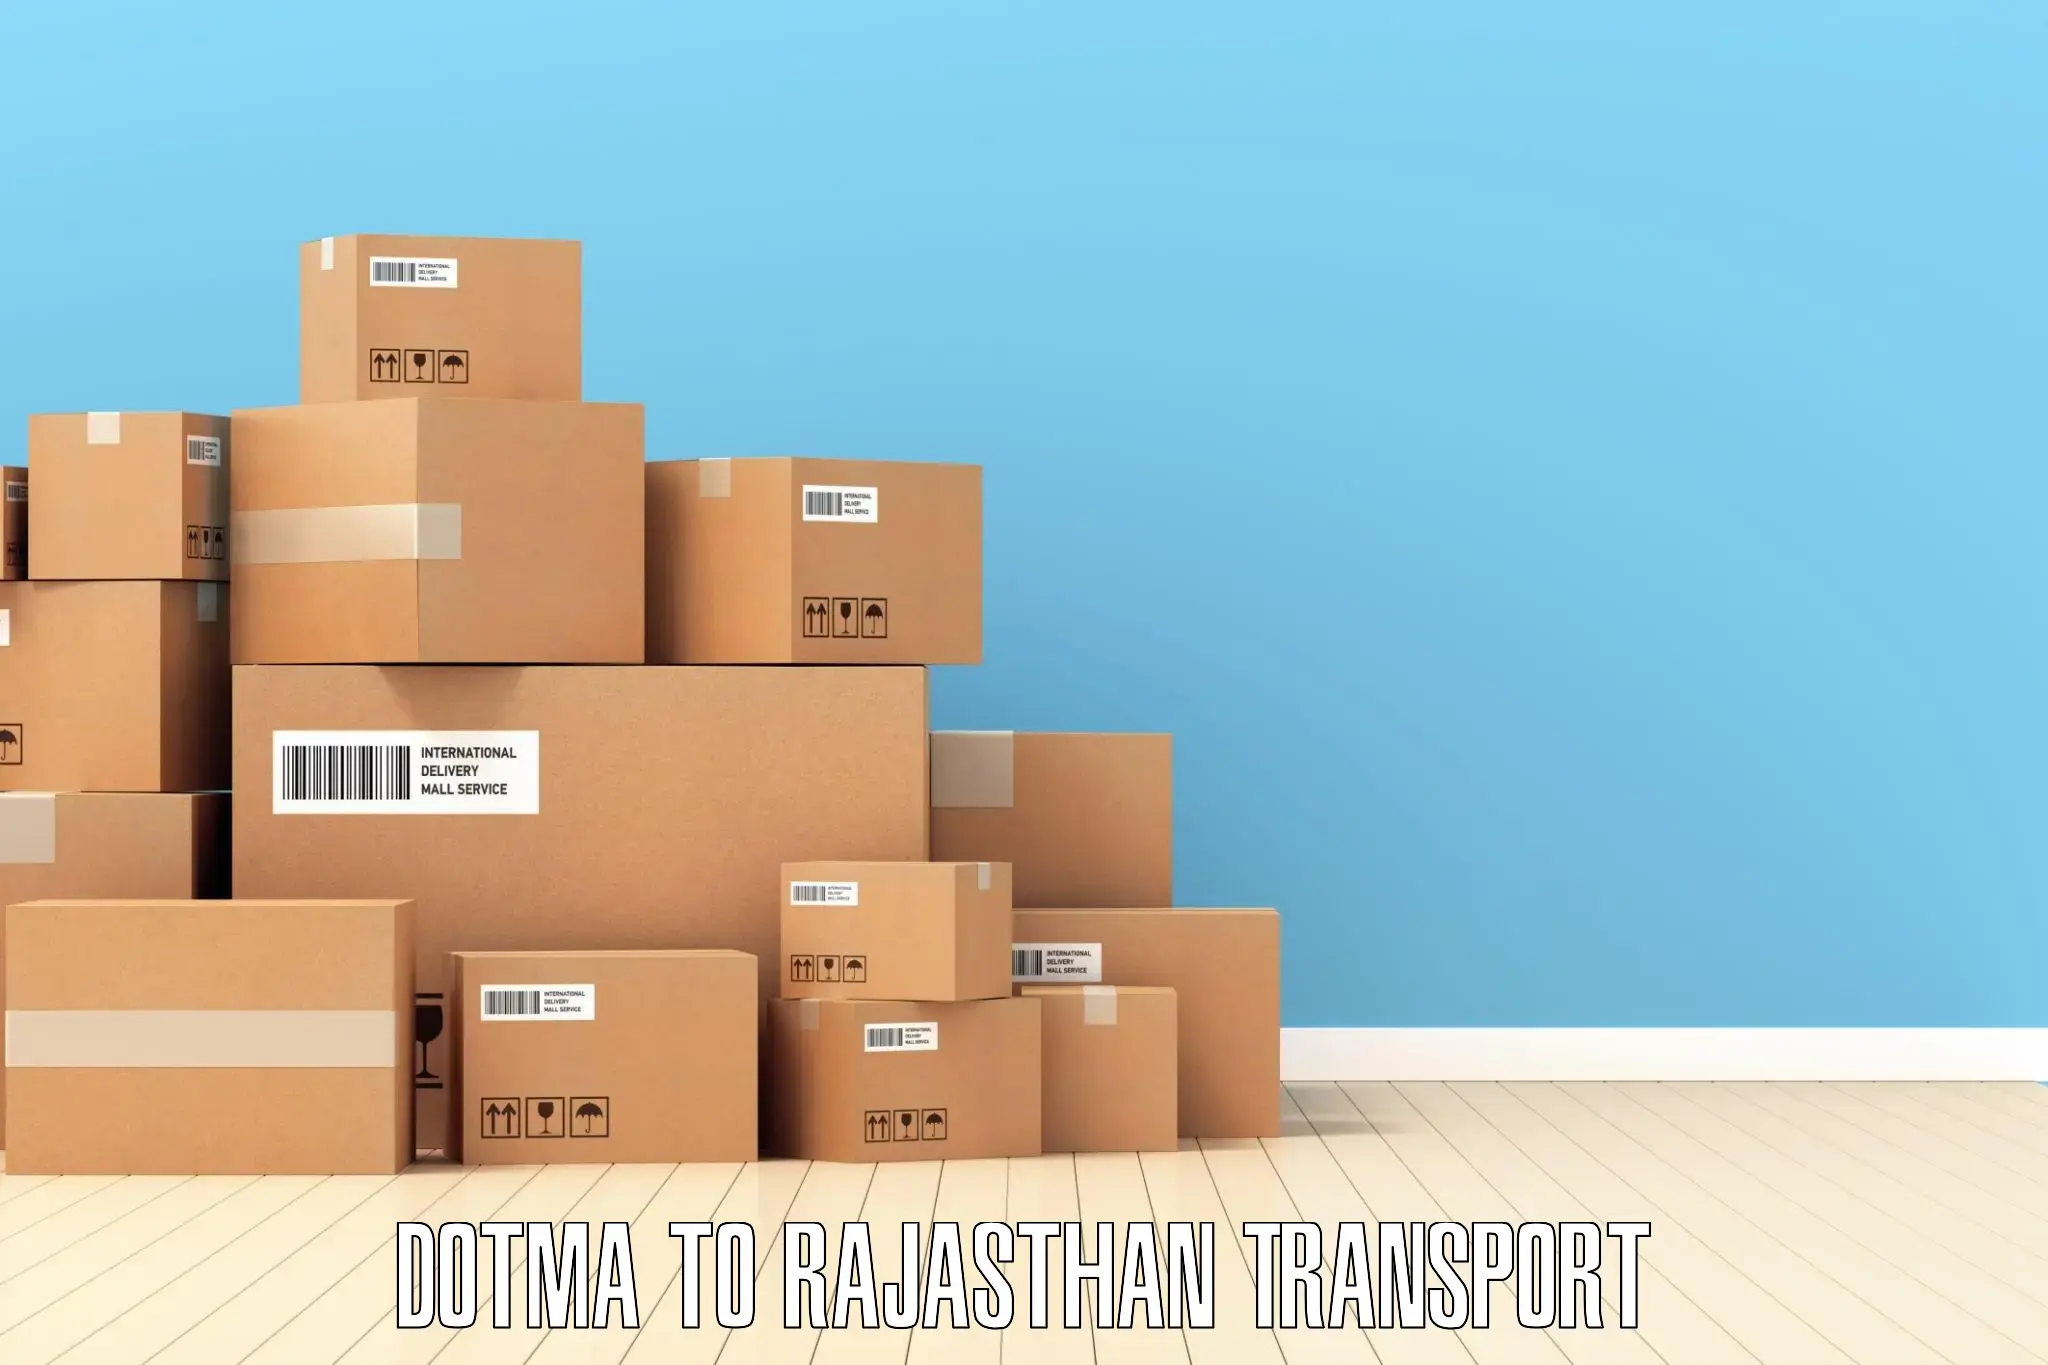 Air cargo transport services Dotma to Kota